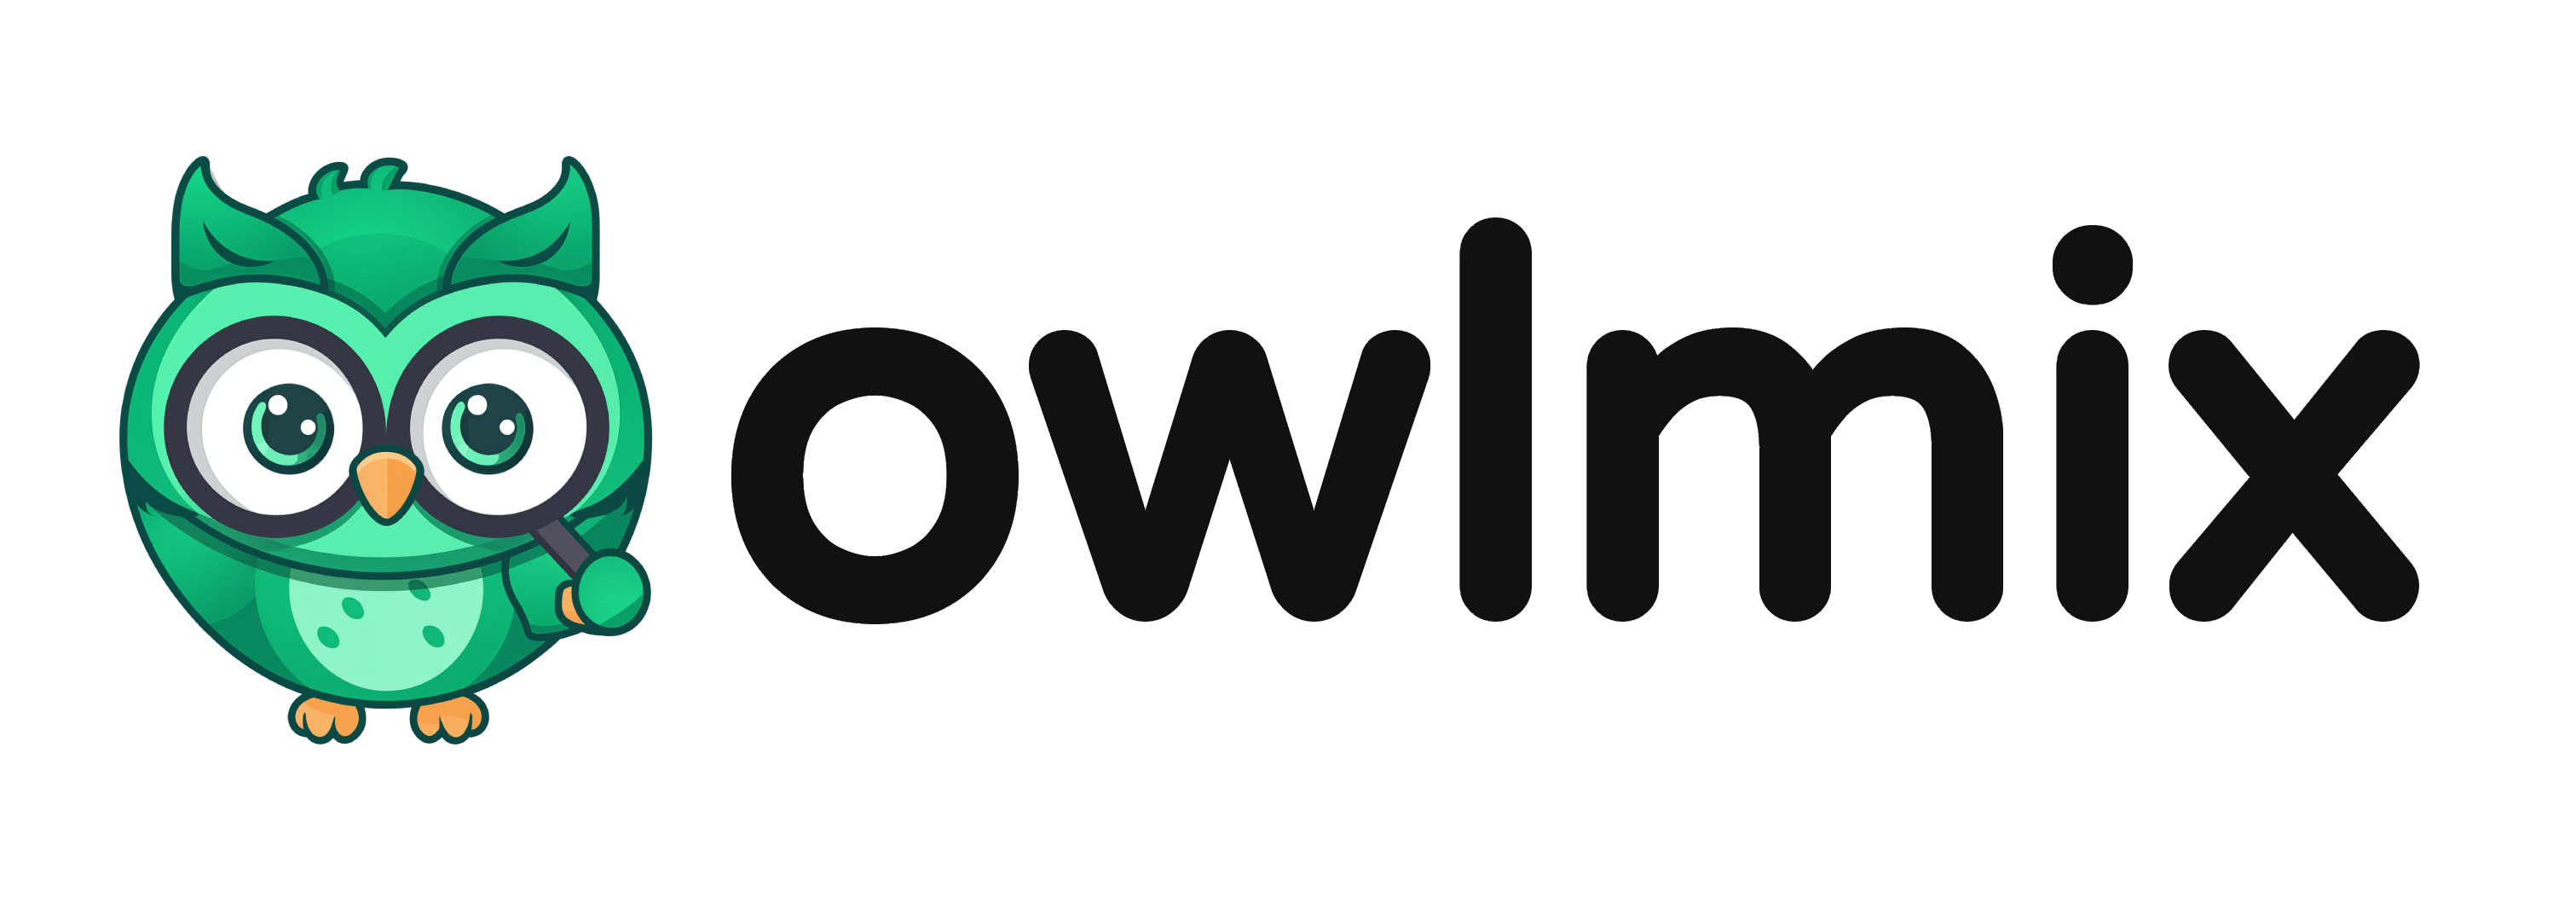 Owlmix Logo